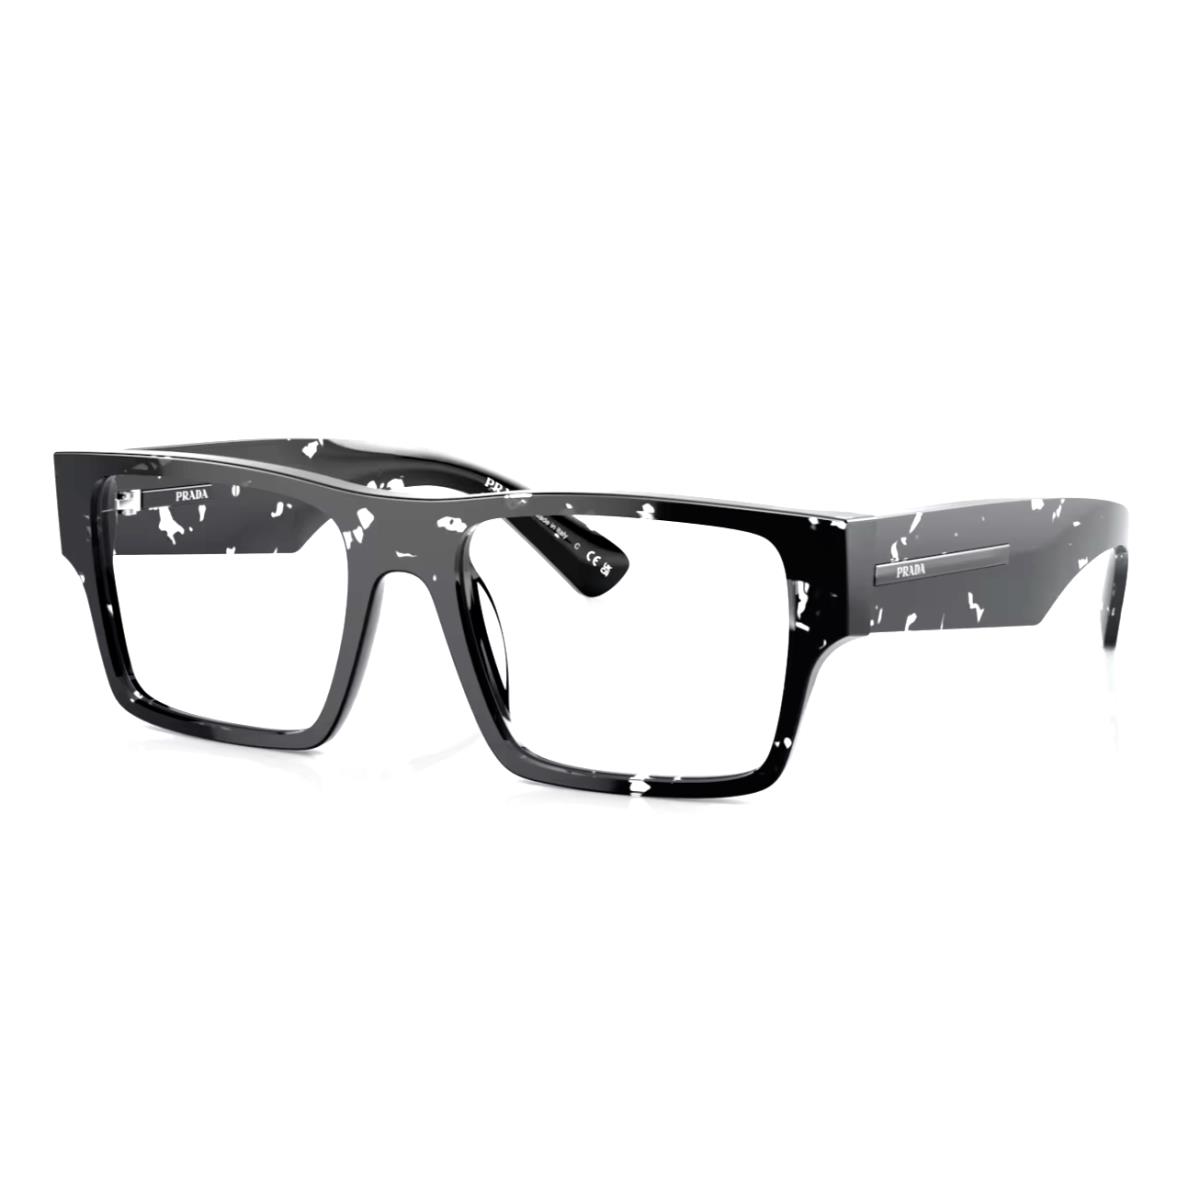 Prada Eyeglasses Vpr A08 15O-1O1 52-18 140 Black Havana Transparent Frames - Frame: Black Havana Transparent